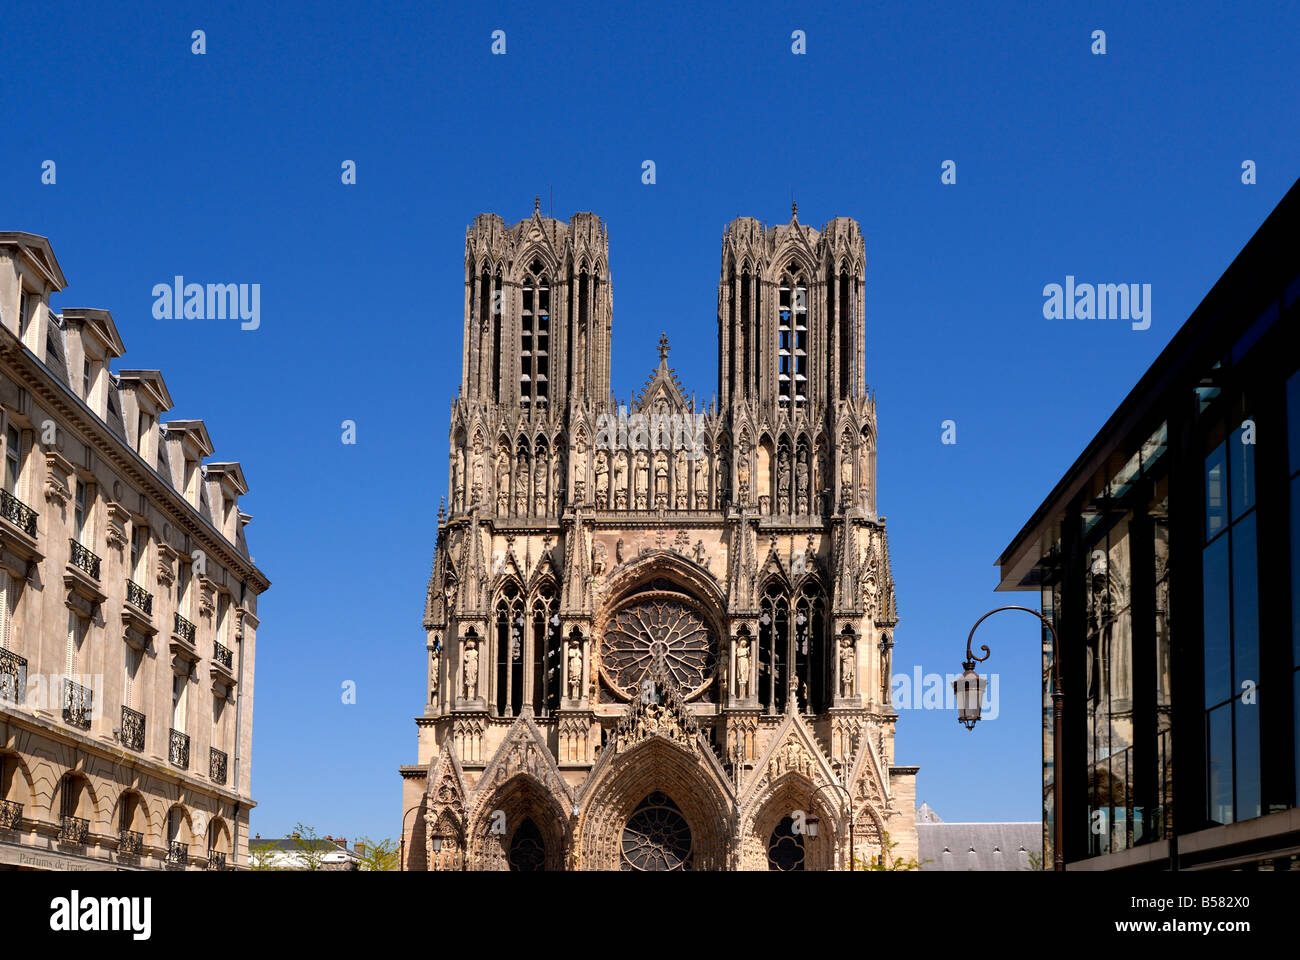 Kathedrale von Reims Notre Dame zur blauen Stunde. Abends bunte Beleuchtung  der Fassade. Reims, Champagne, Frankreich Stockfotografie - Alamy